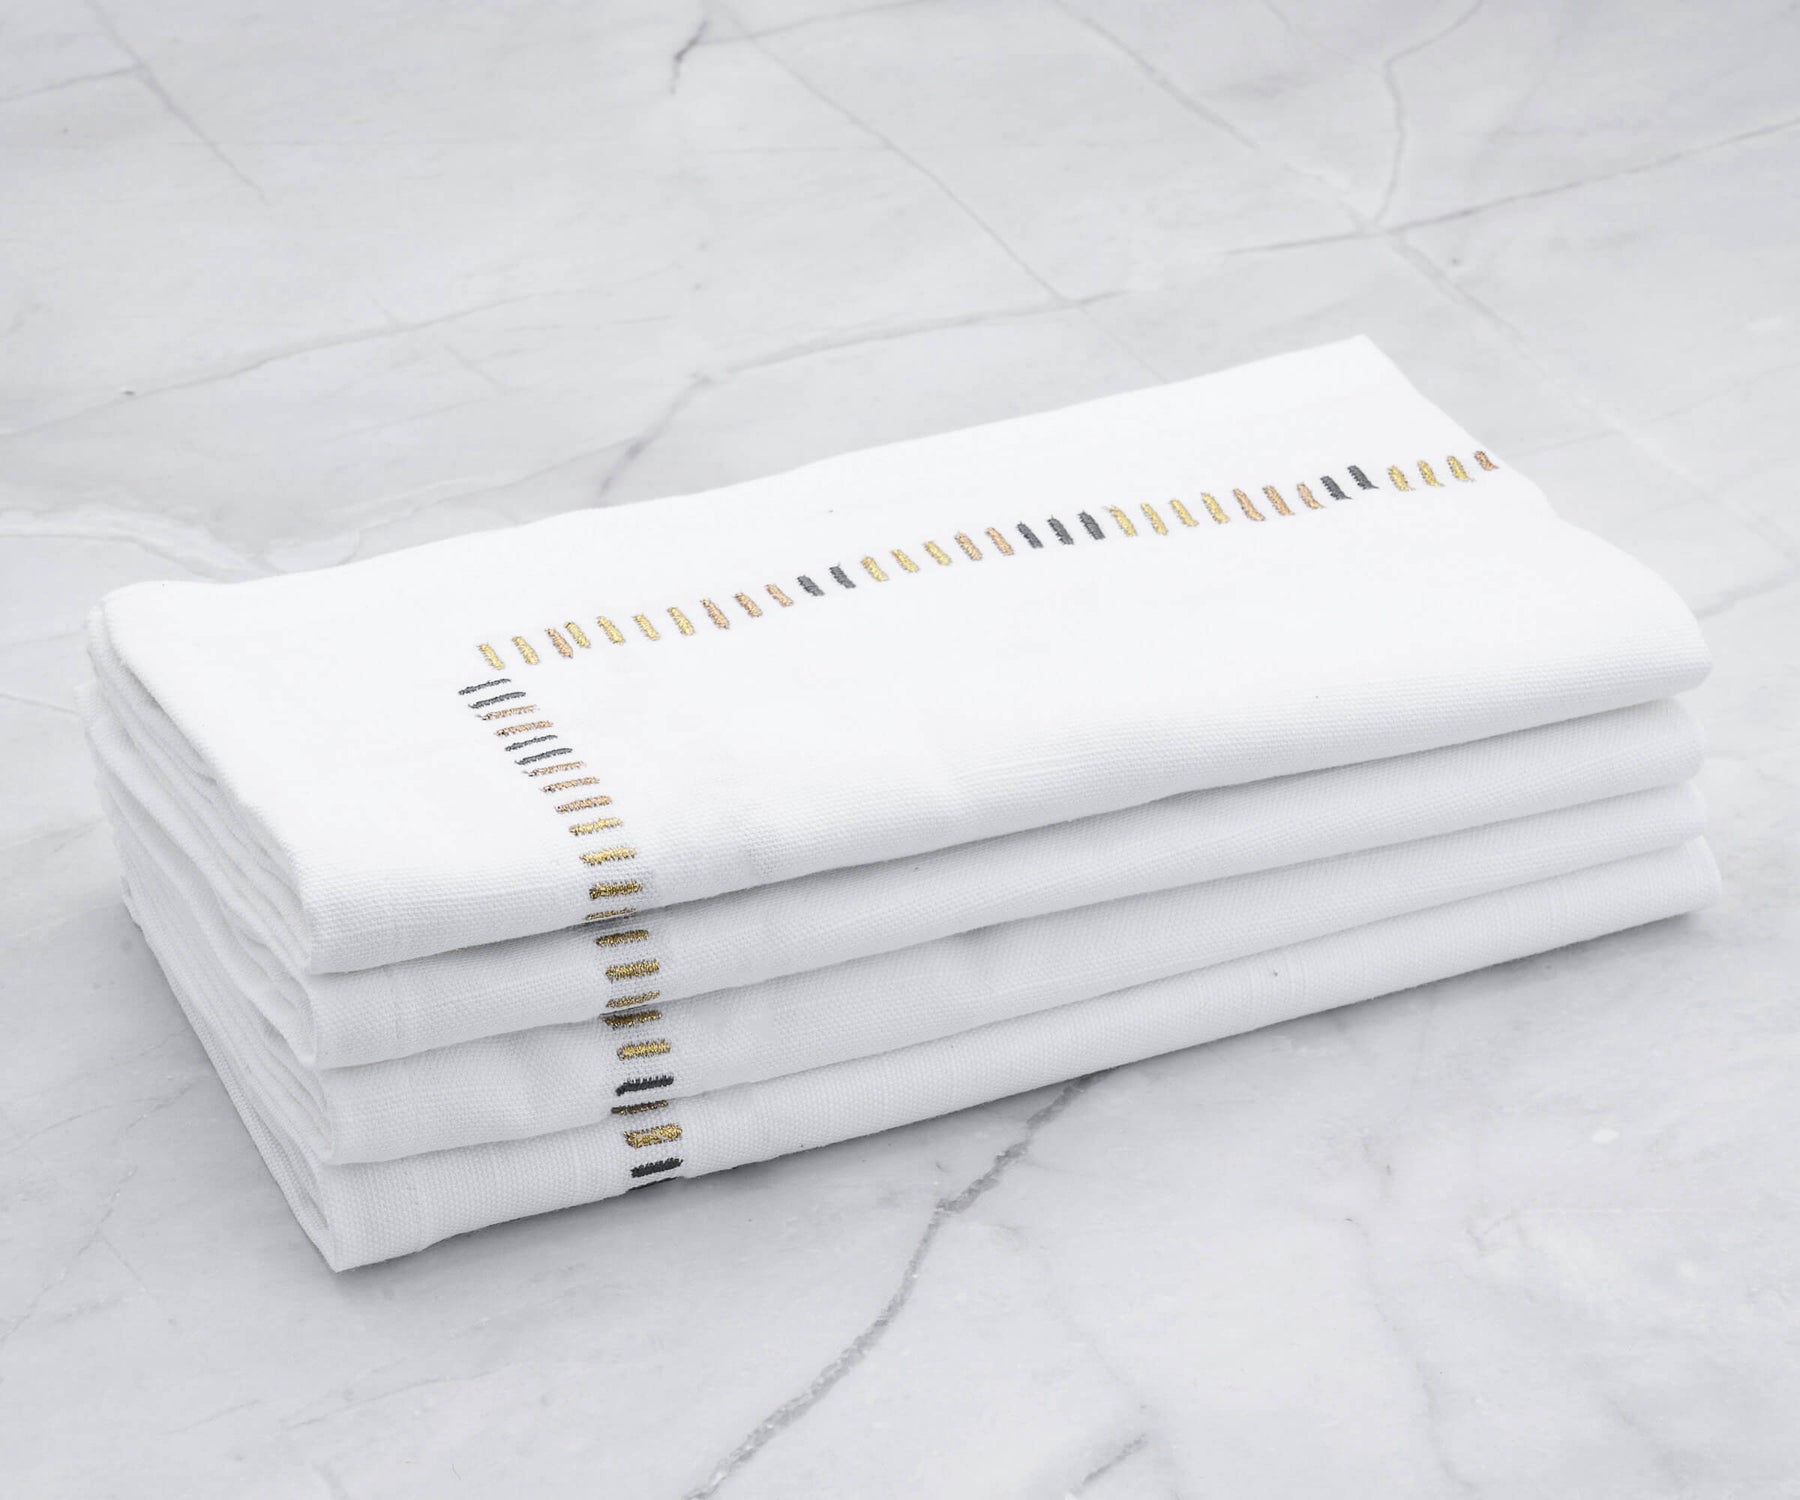 Cloth napkins bulk options for convenient table arrangements.